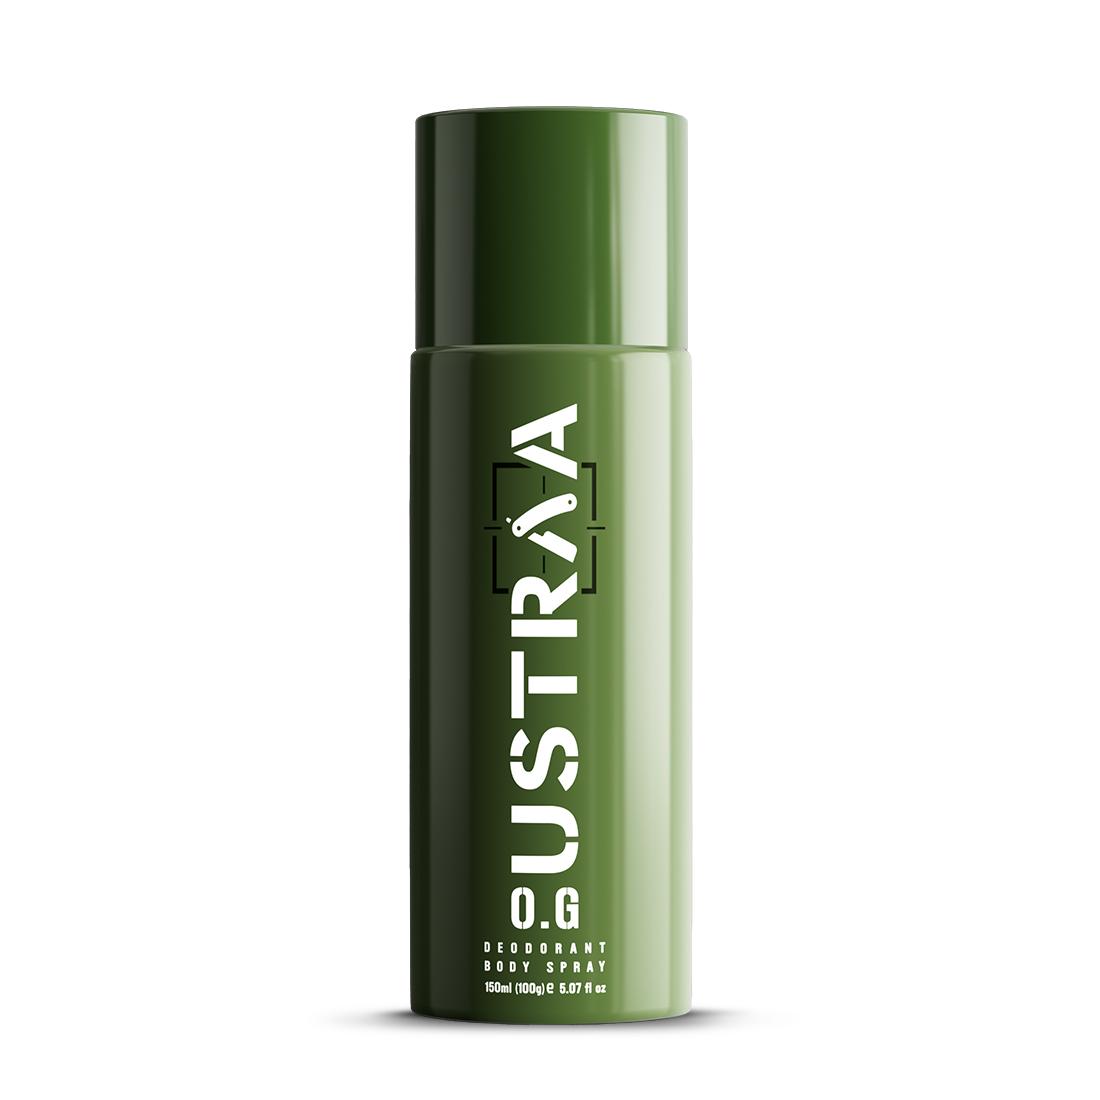 Ustraa OG Deodorant Body Spray For Men with Strong Fragrance (150ml)